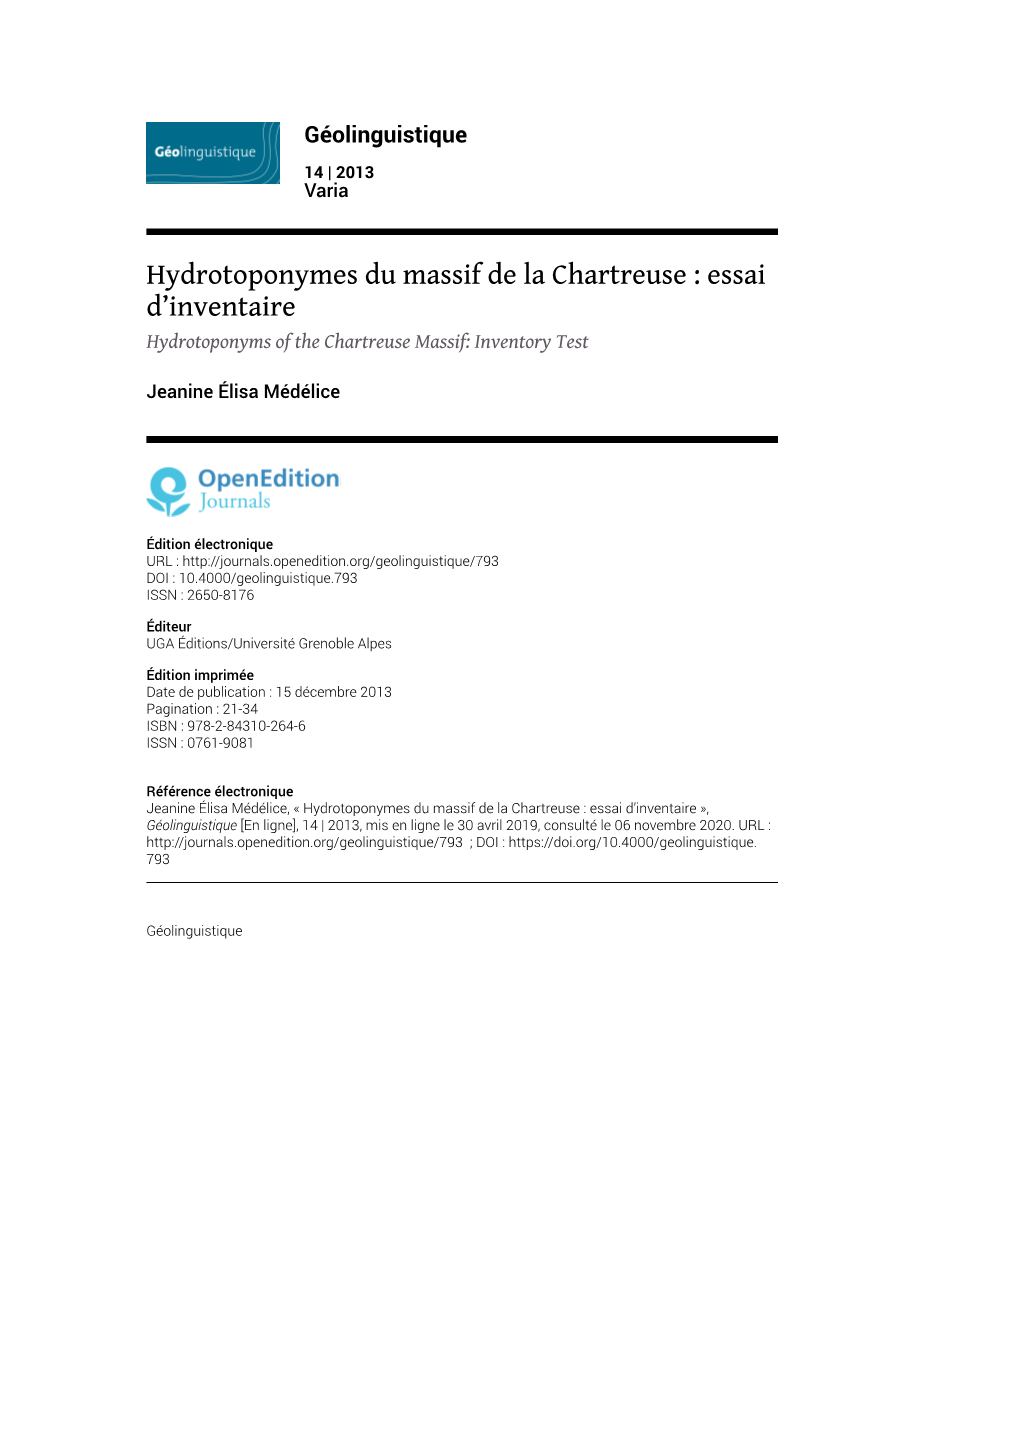 Hydrotoponymes Du Massif De La Chartreuse : Essai D'inventaire1